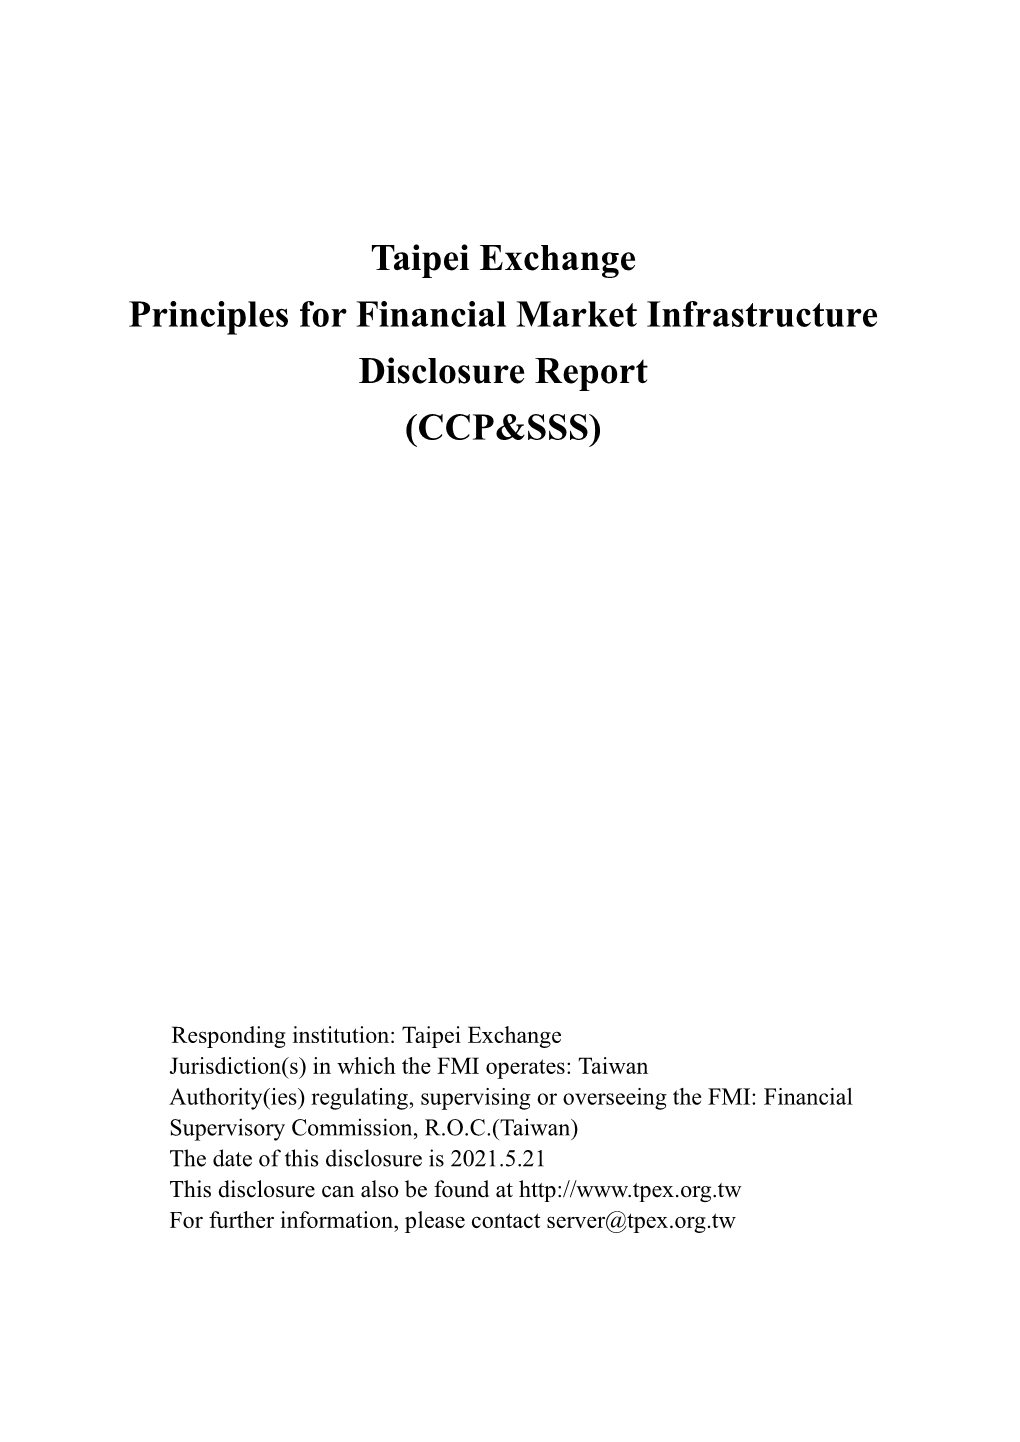 Tpex's PFMI Disclosure Report